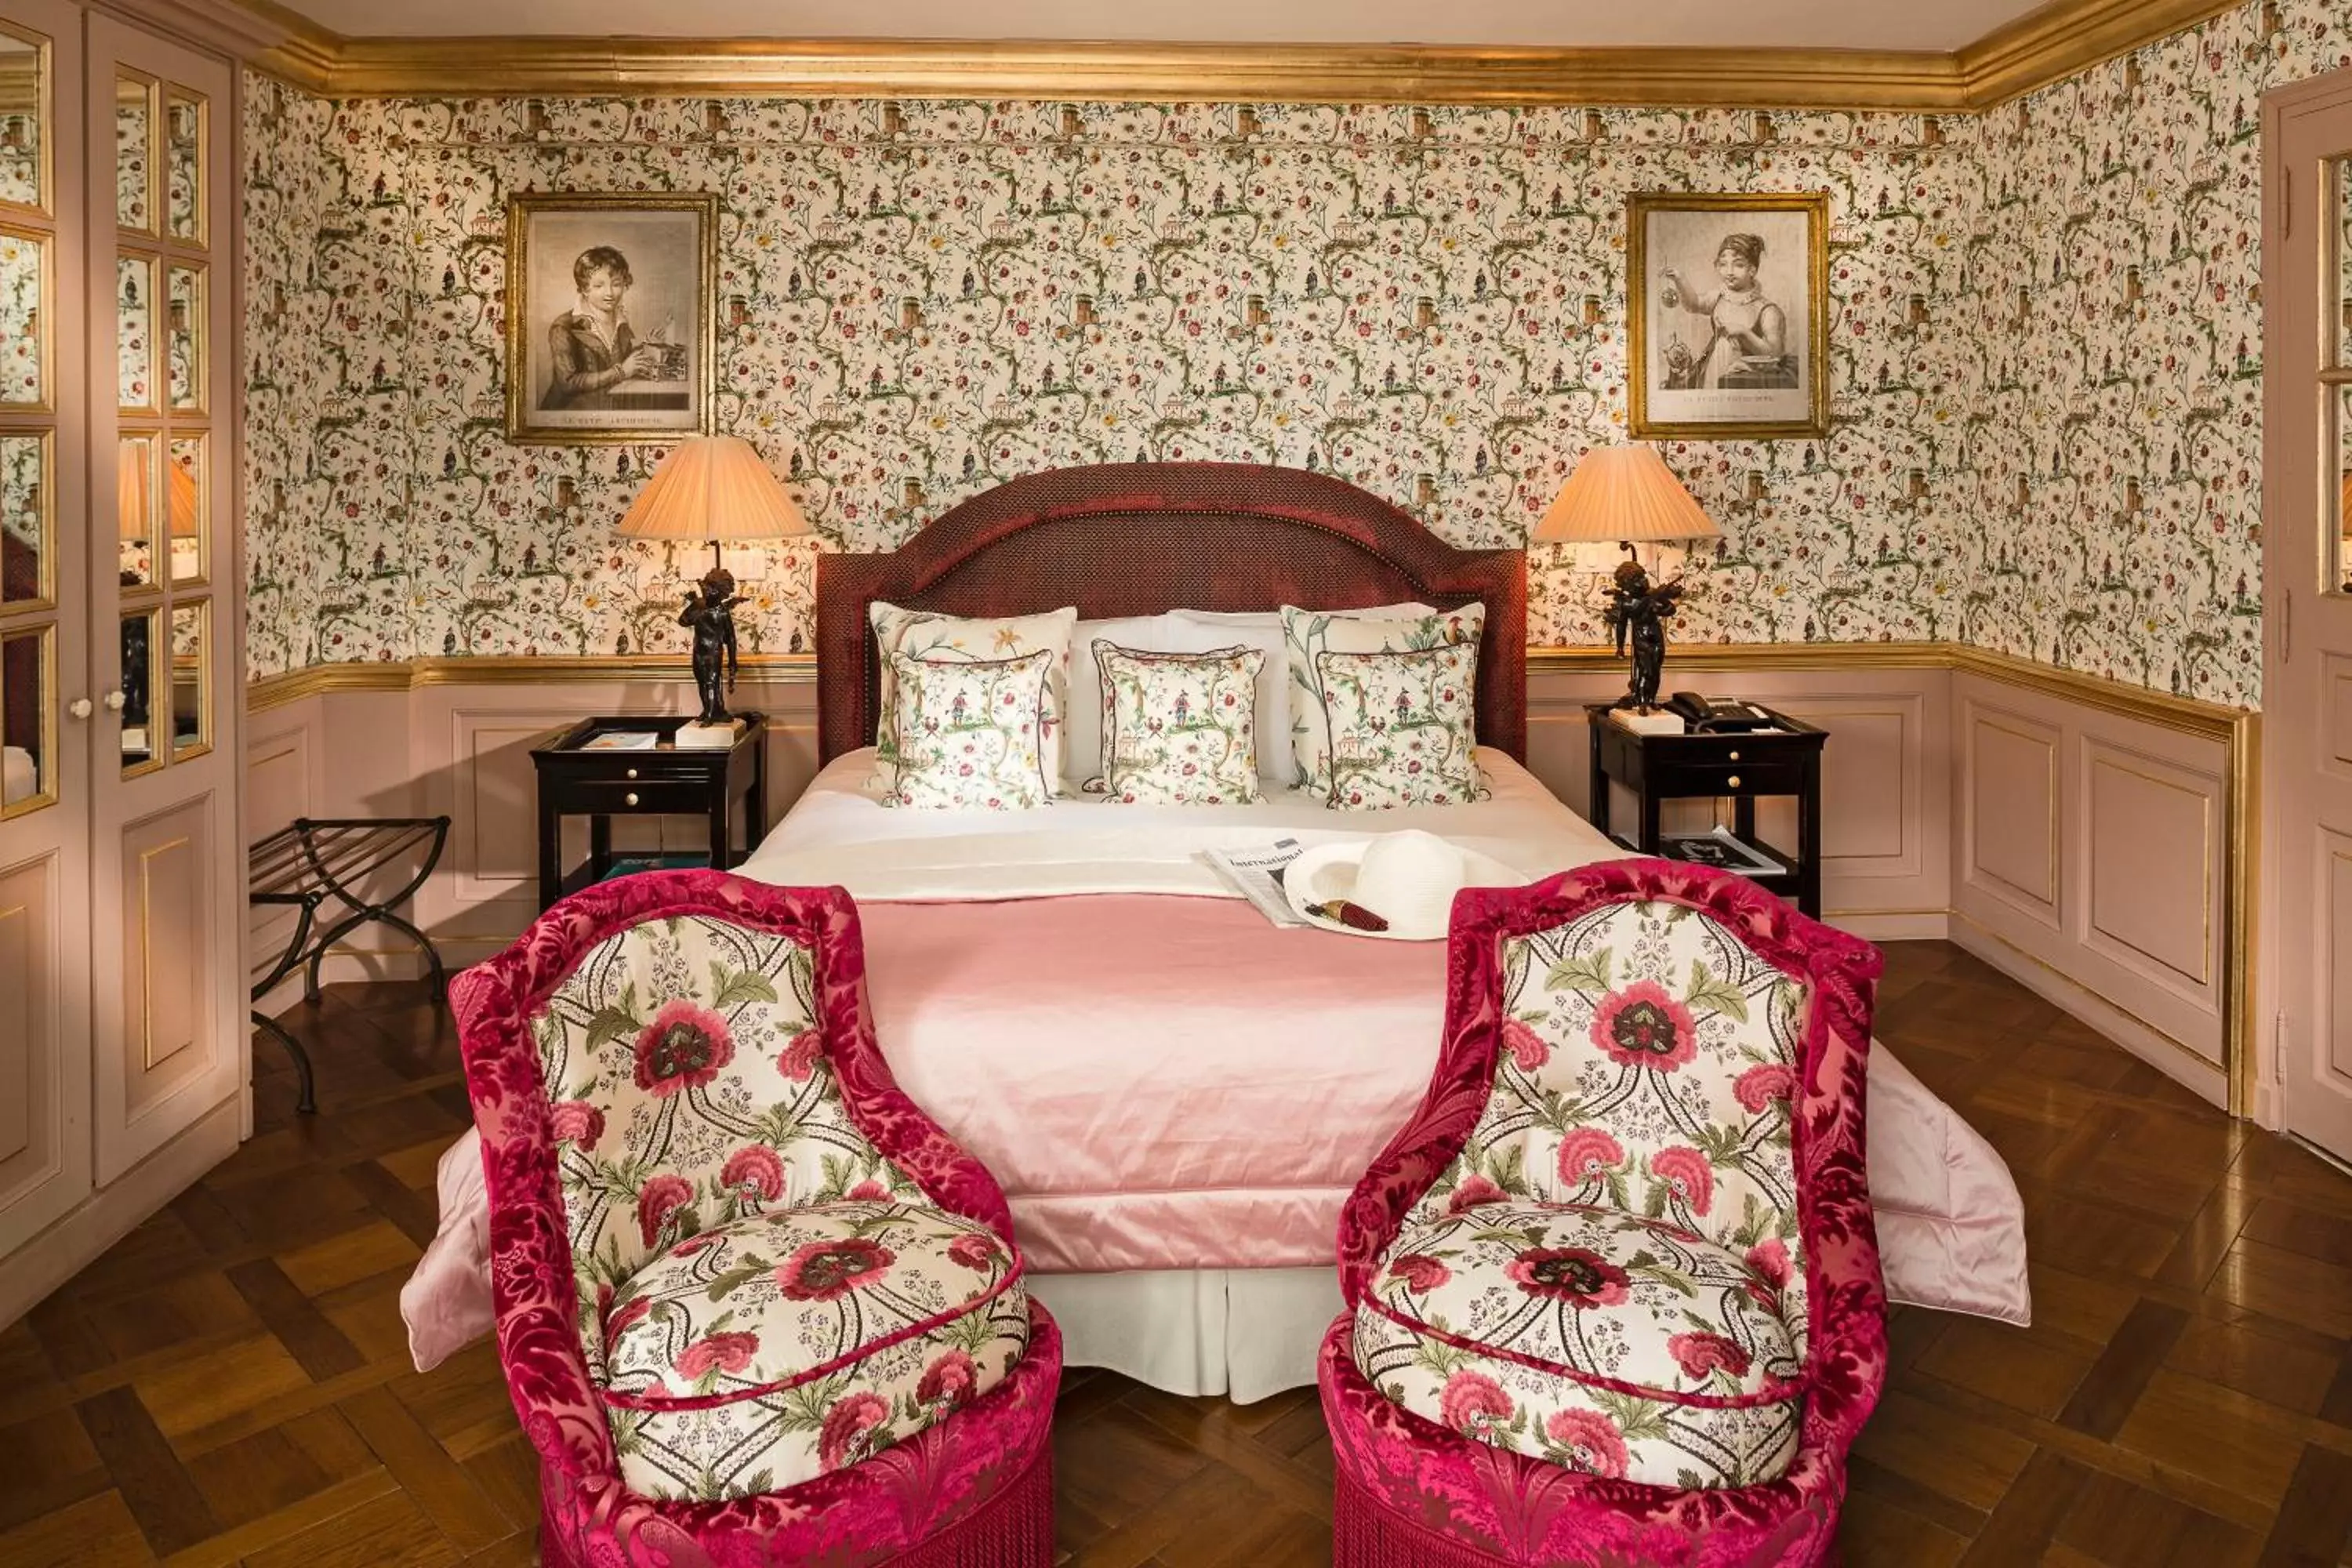 Bedroom, Room Photo in Villa Gallici Hôtel & Spa